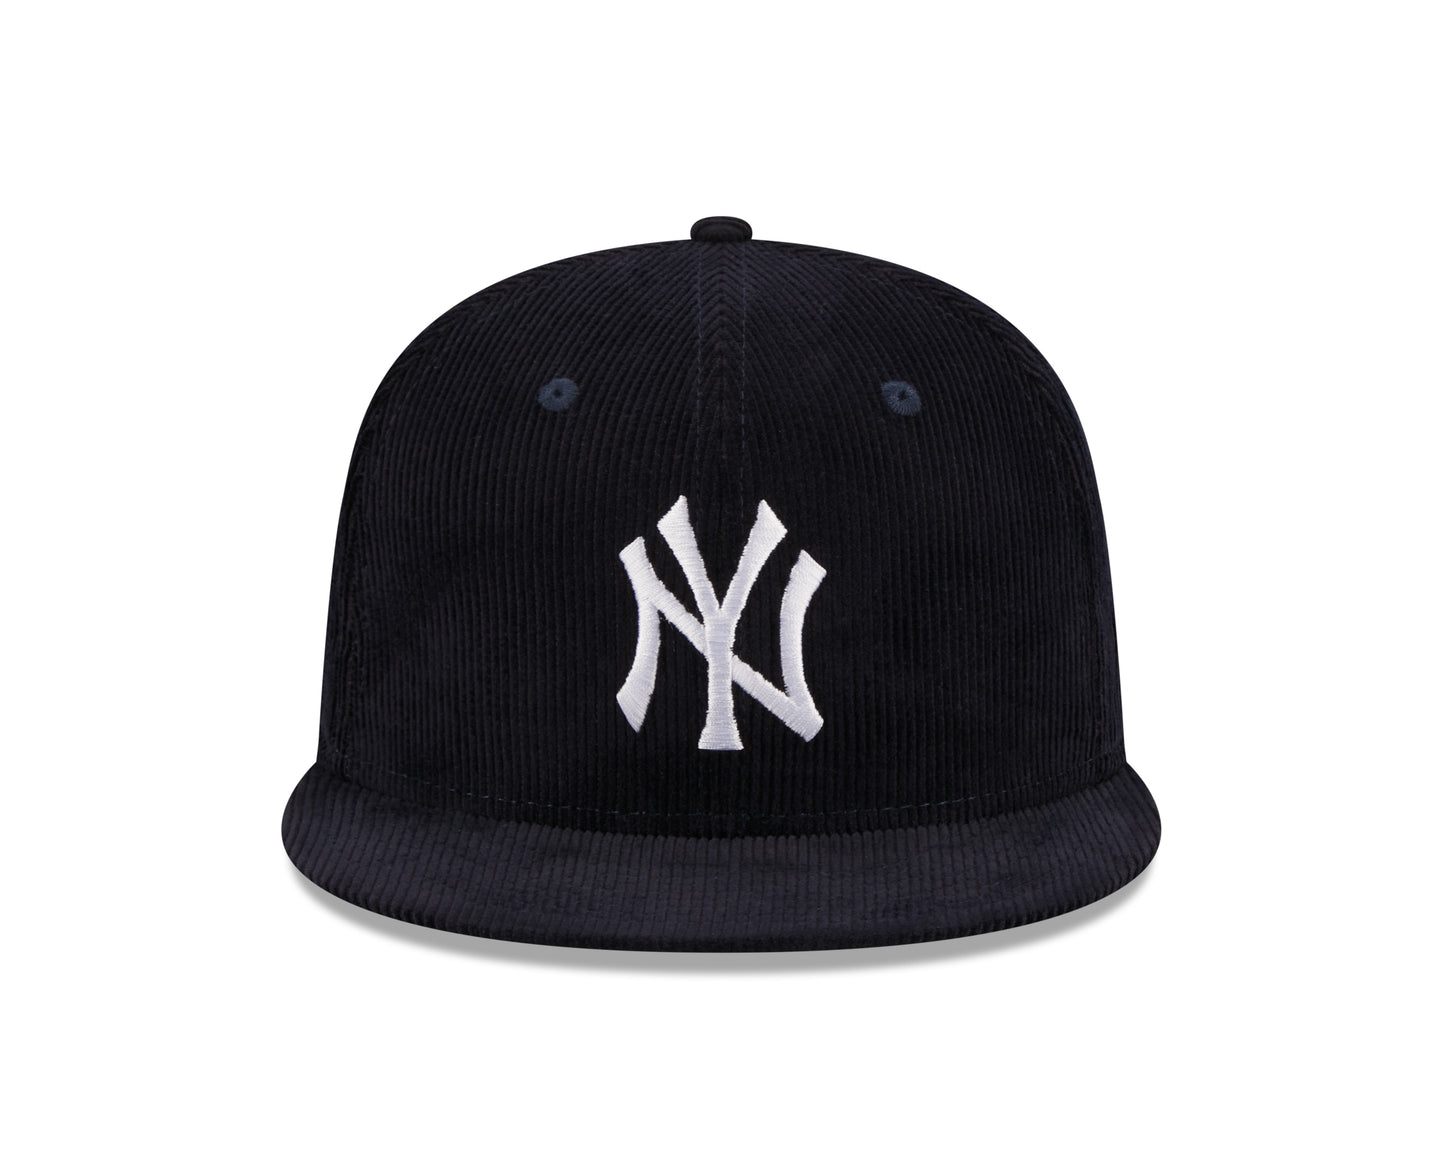 New Era - New York Yankees Throwback Cord - Navy - Headz Up 